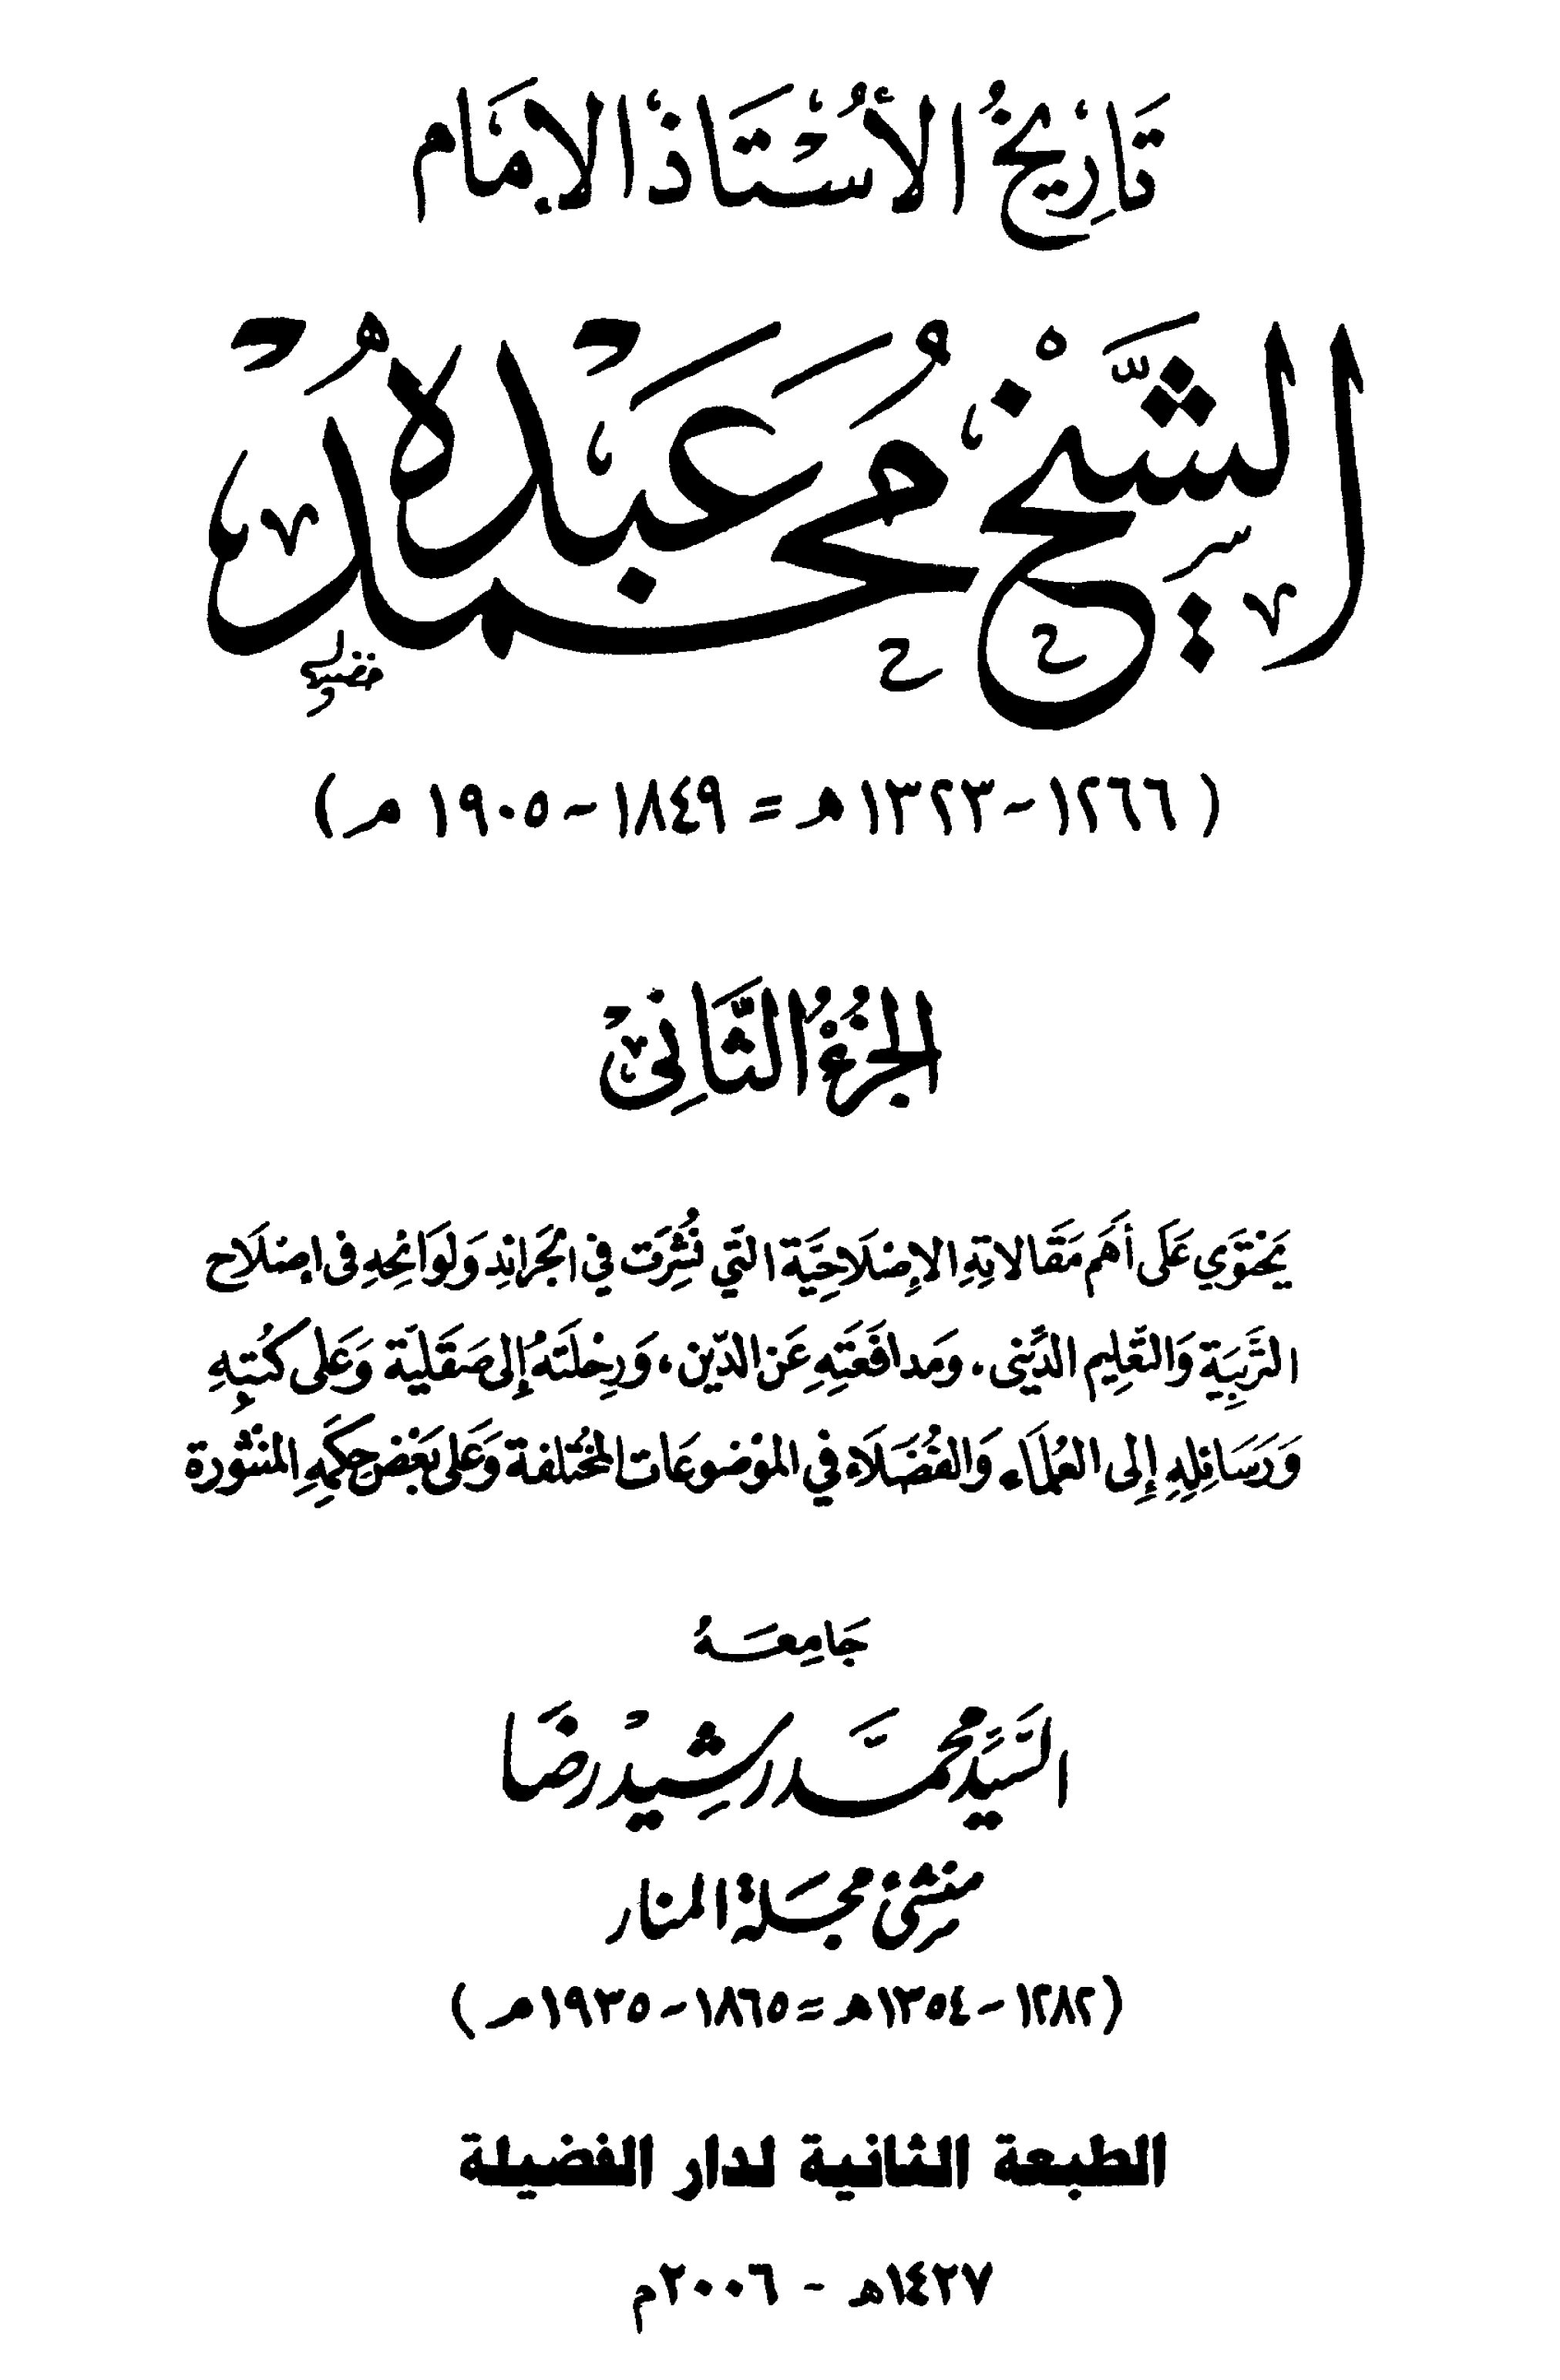 تاريخ الأستاذ الإمام محمد عبده (الجزء الثاني)